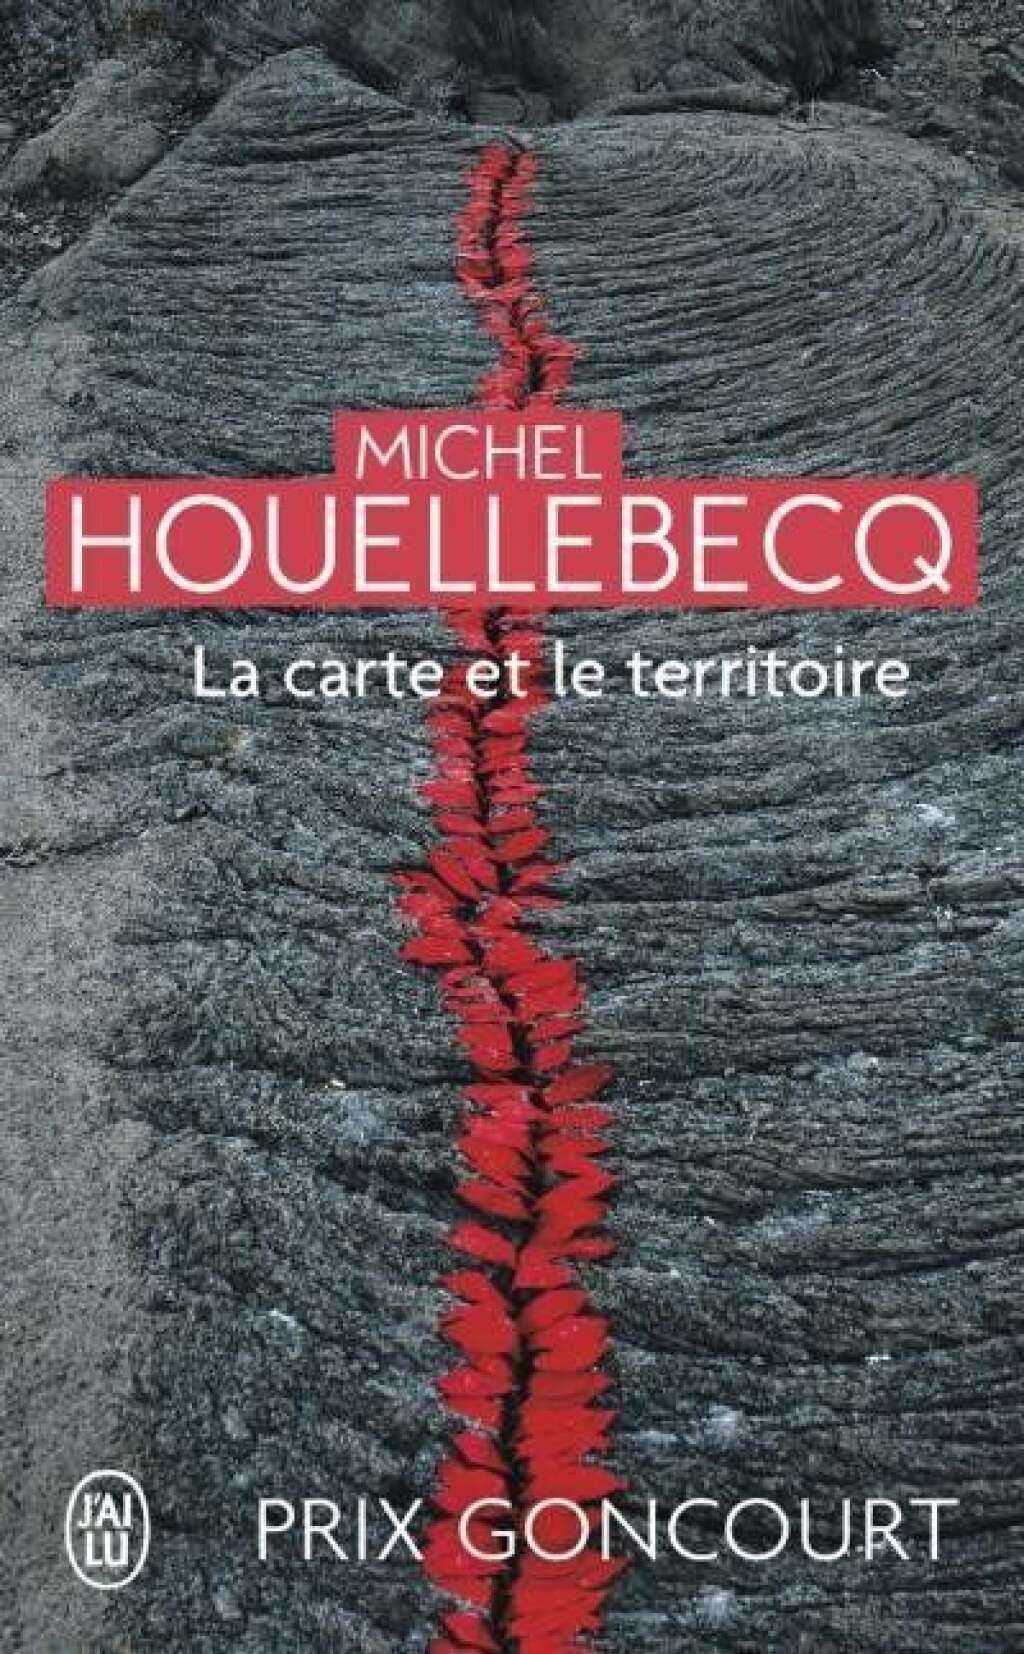 Réponse: "La Carte et le Territoire" (2010) de Michel Houellebecq